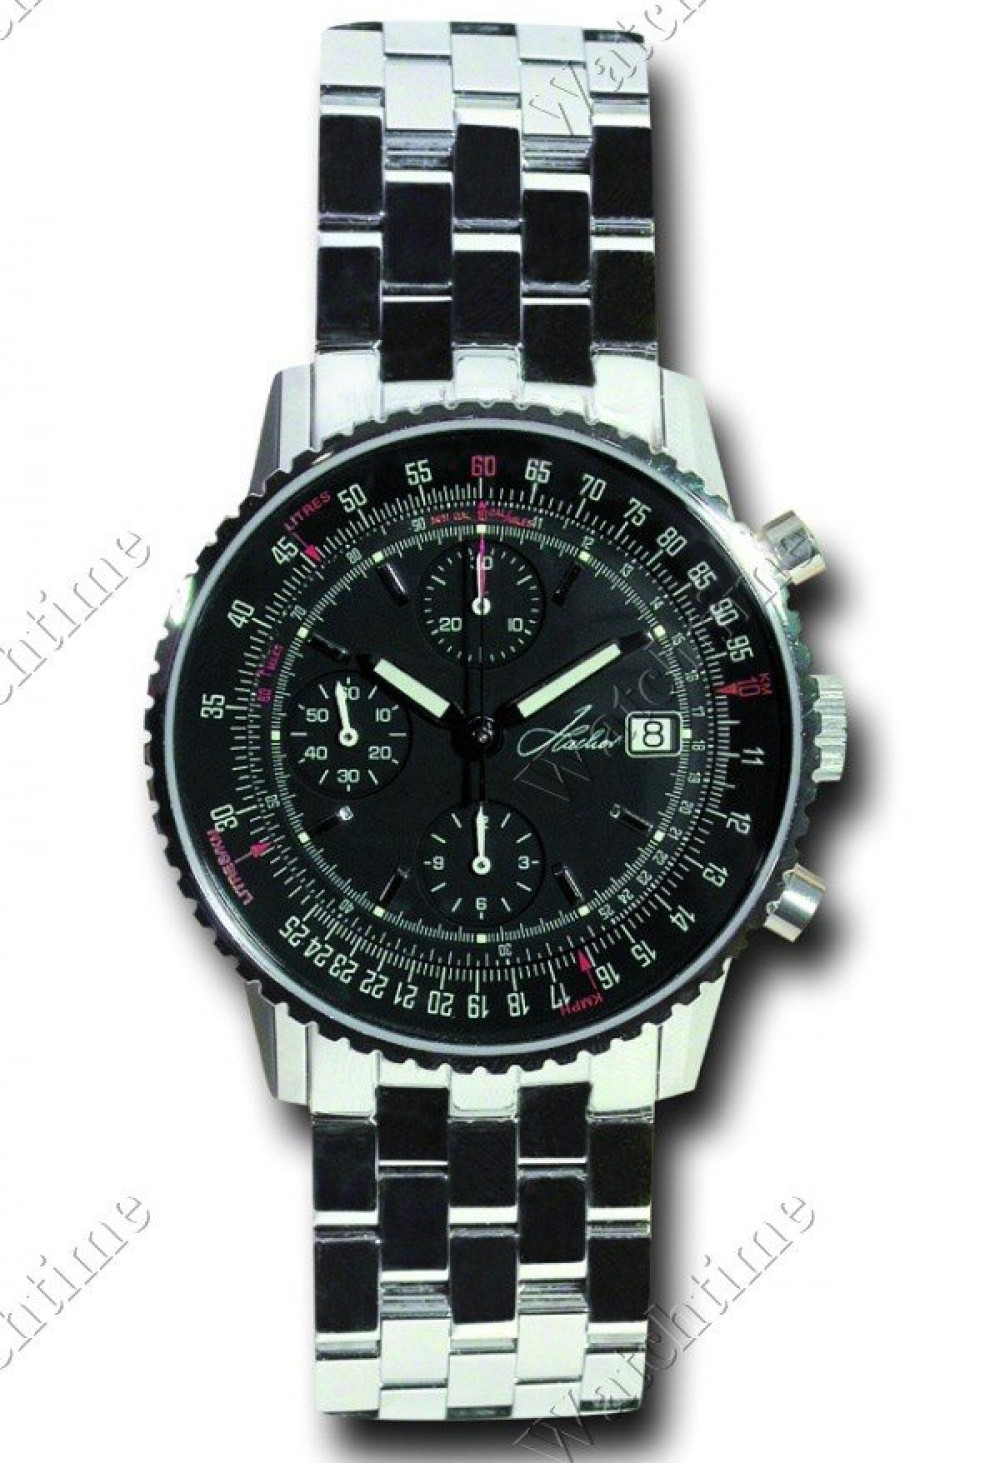 Zegarek firmy Hacher, model Aviateur